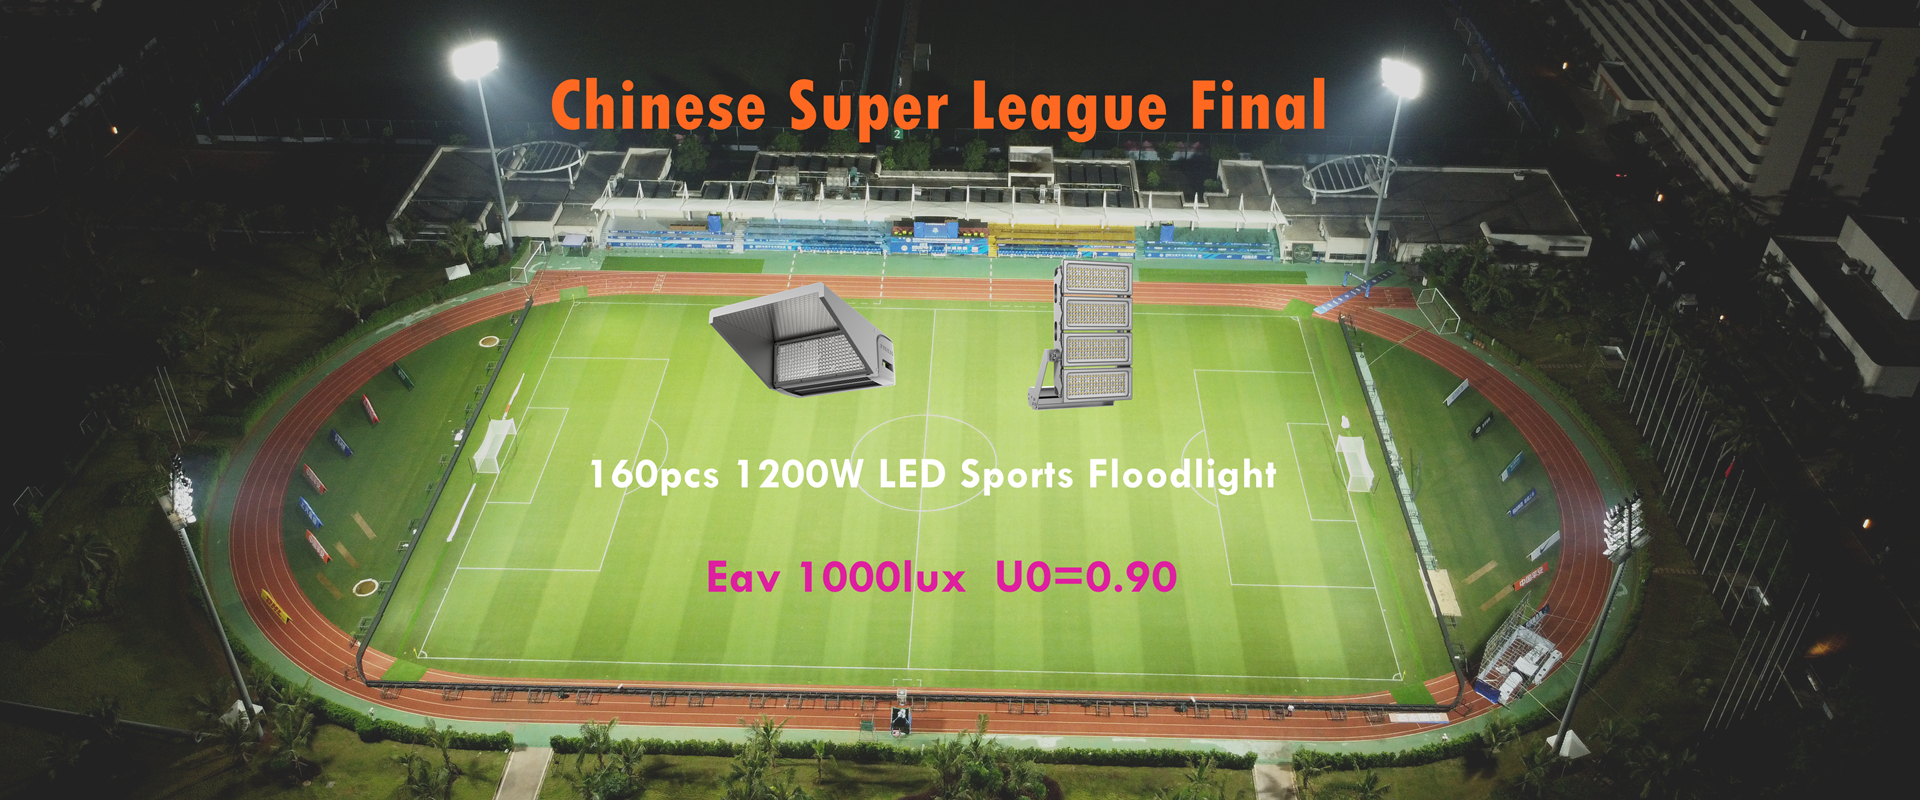 해구 축구 경기장에서 중국 슈퍼 리그 2022를 위한 1200W LED 스포츠 투광 조명등